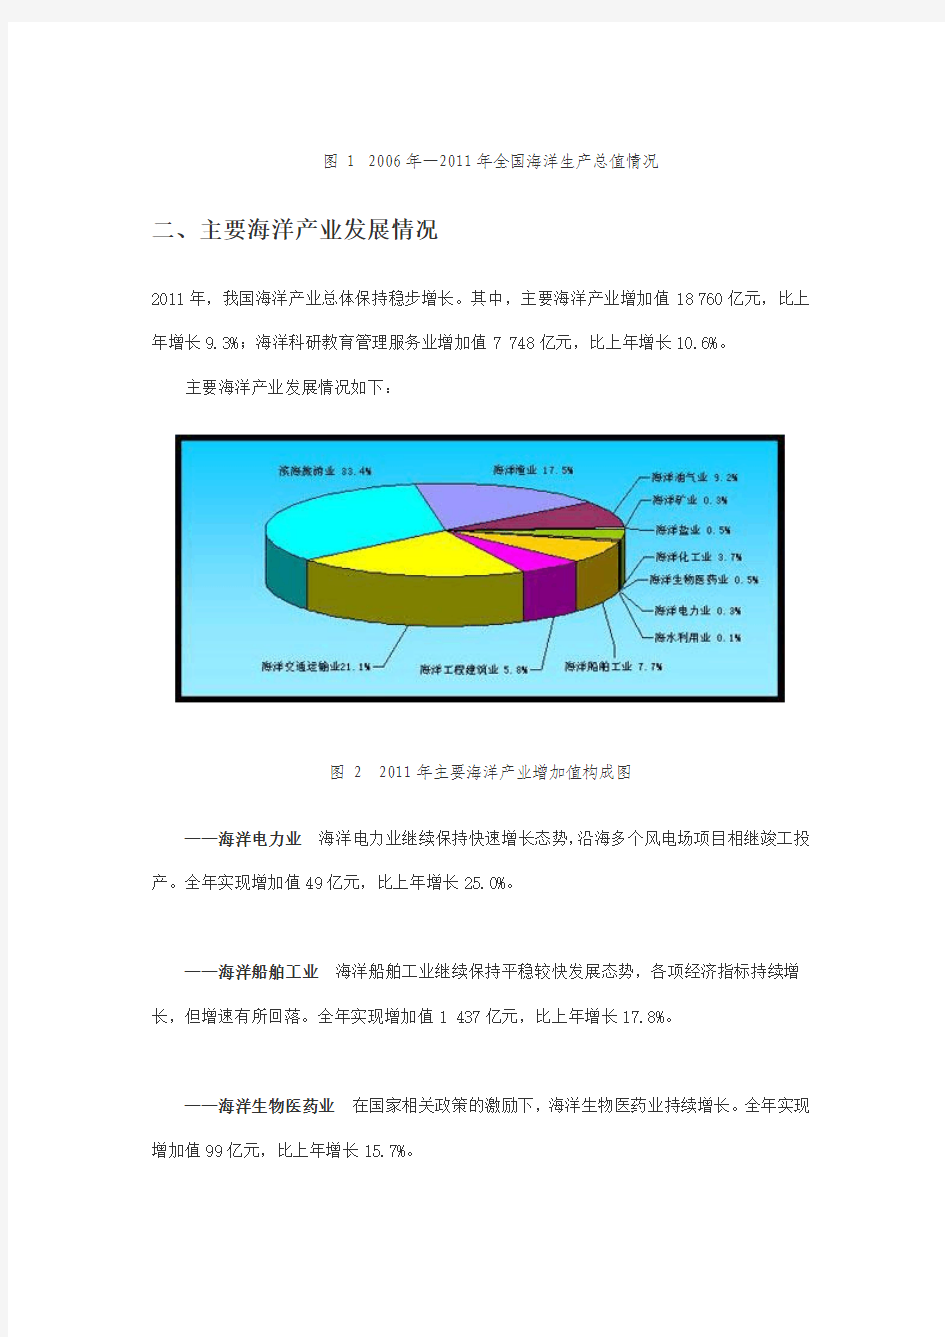 2011年中国海洋经济统计公报